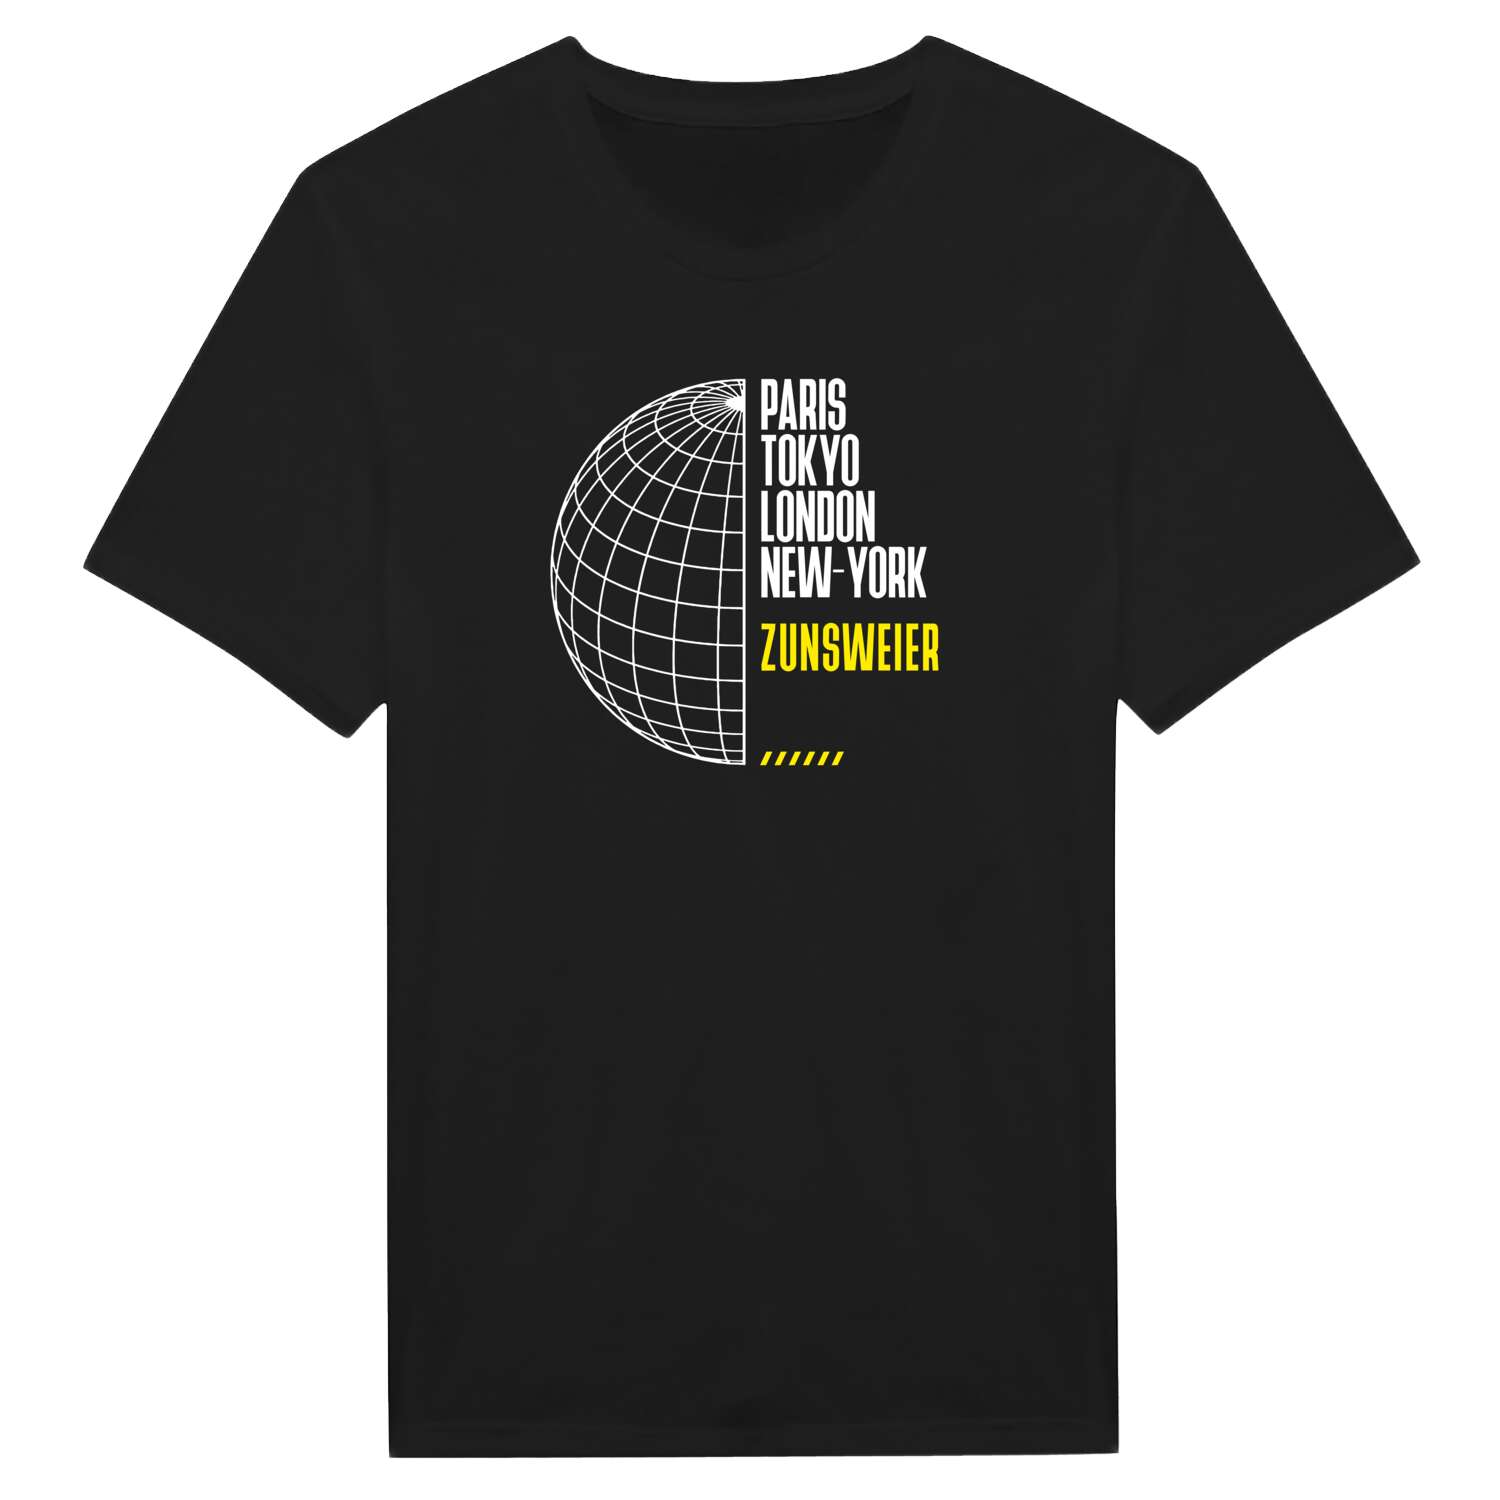 Zunsweier T-Shirt »Paris Tokyo London«